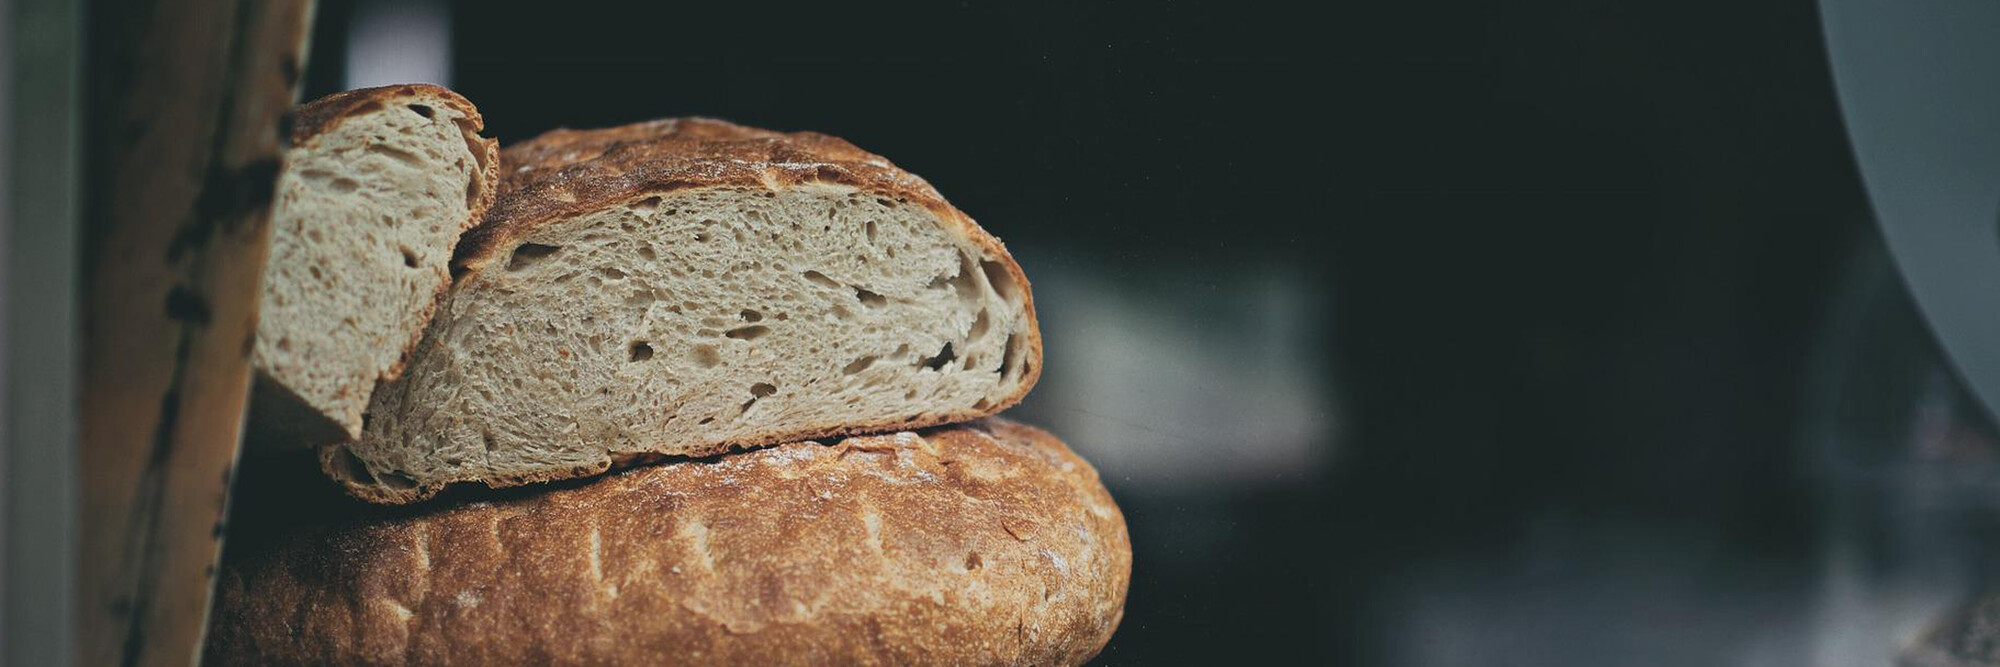 Brood en zuurdesem, een verhaal van echte liefde